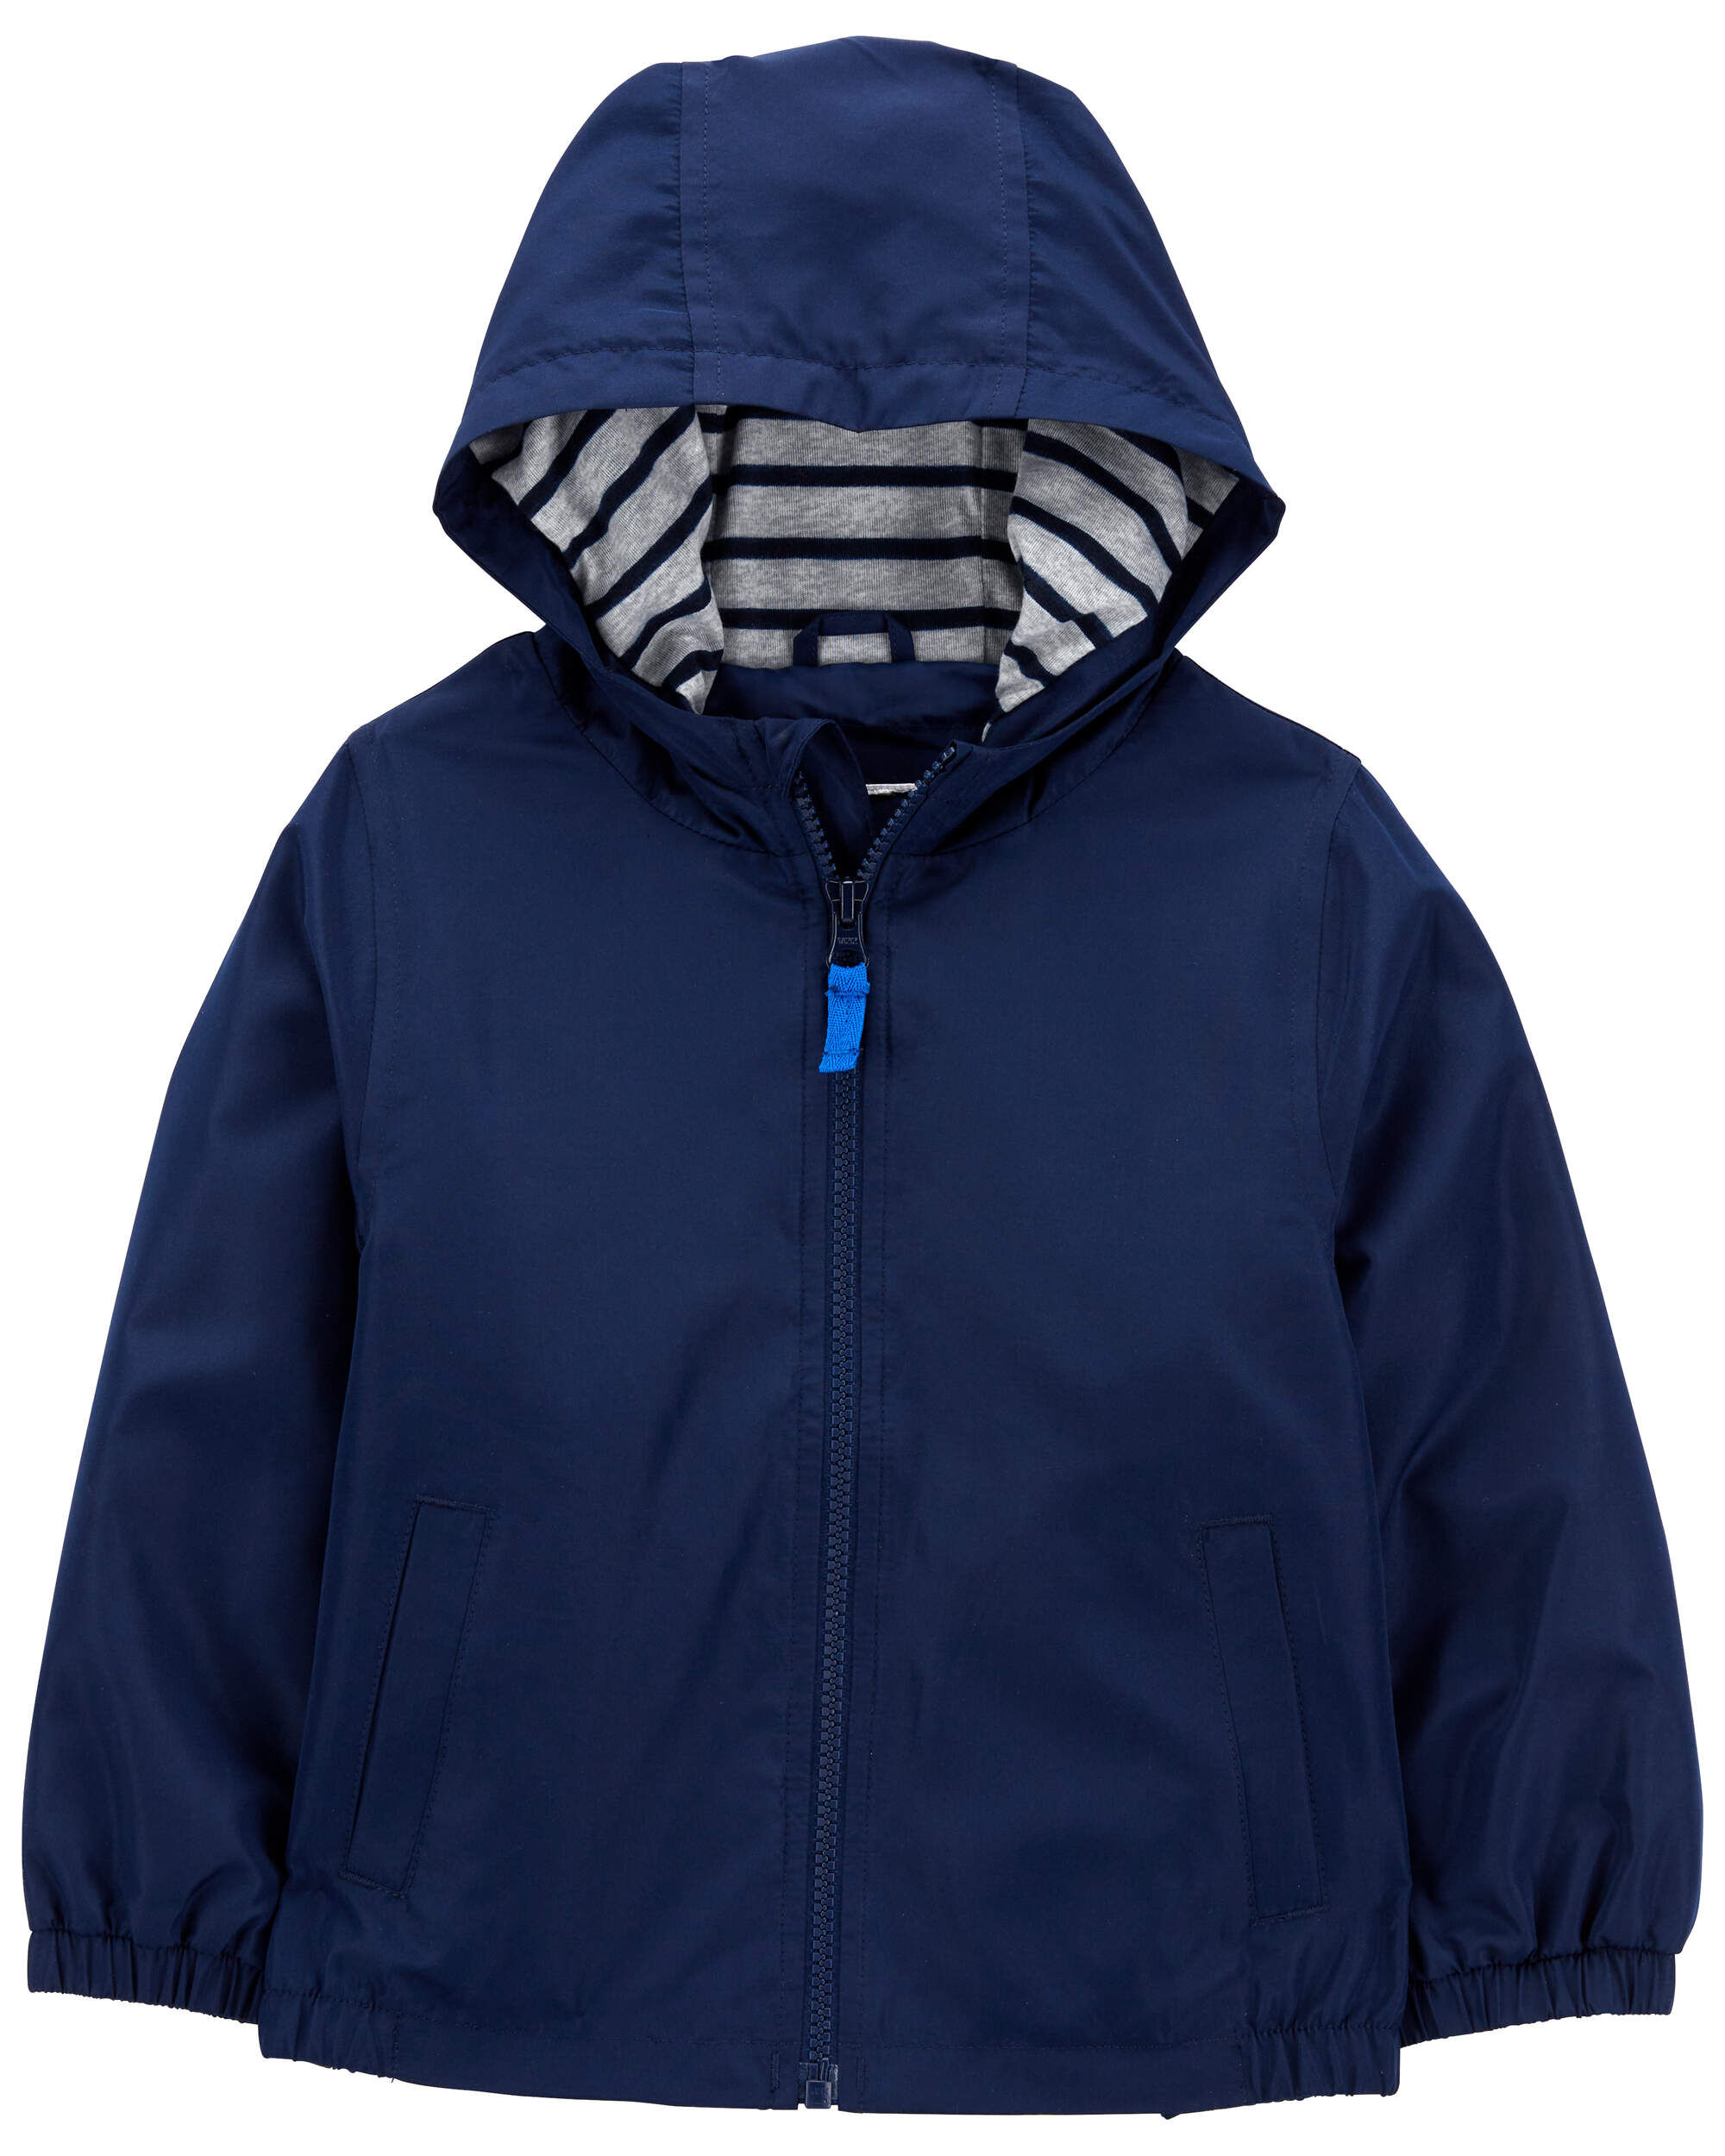 George Men's Faux Sherpa Fleece Lined Jacket with Hood, Sizes S-3XL -  Walmart.com